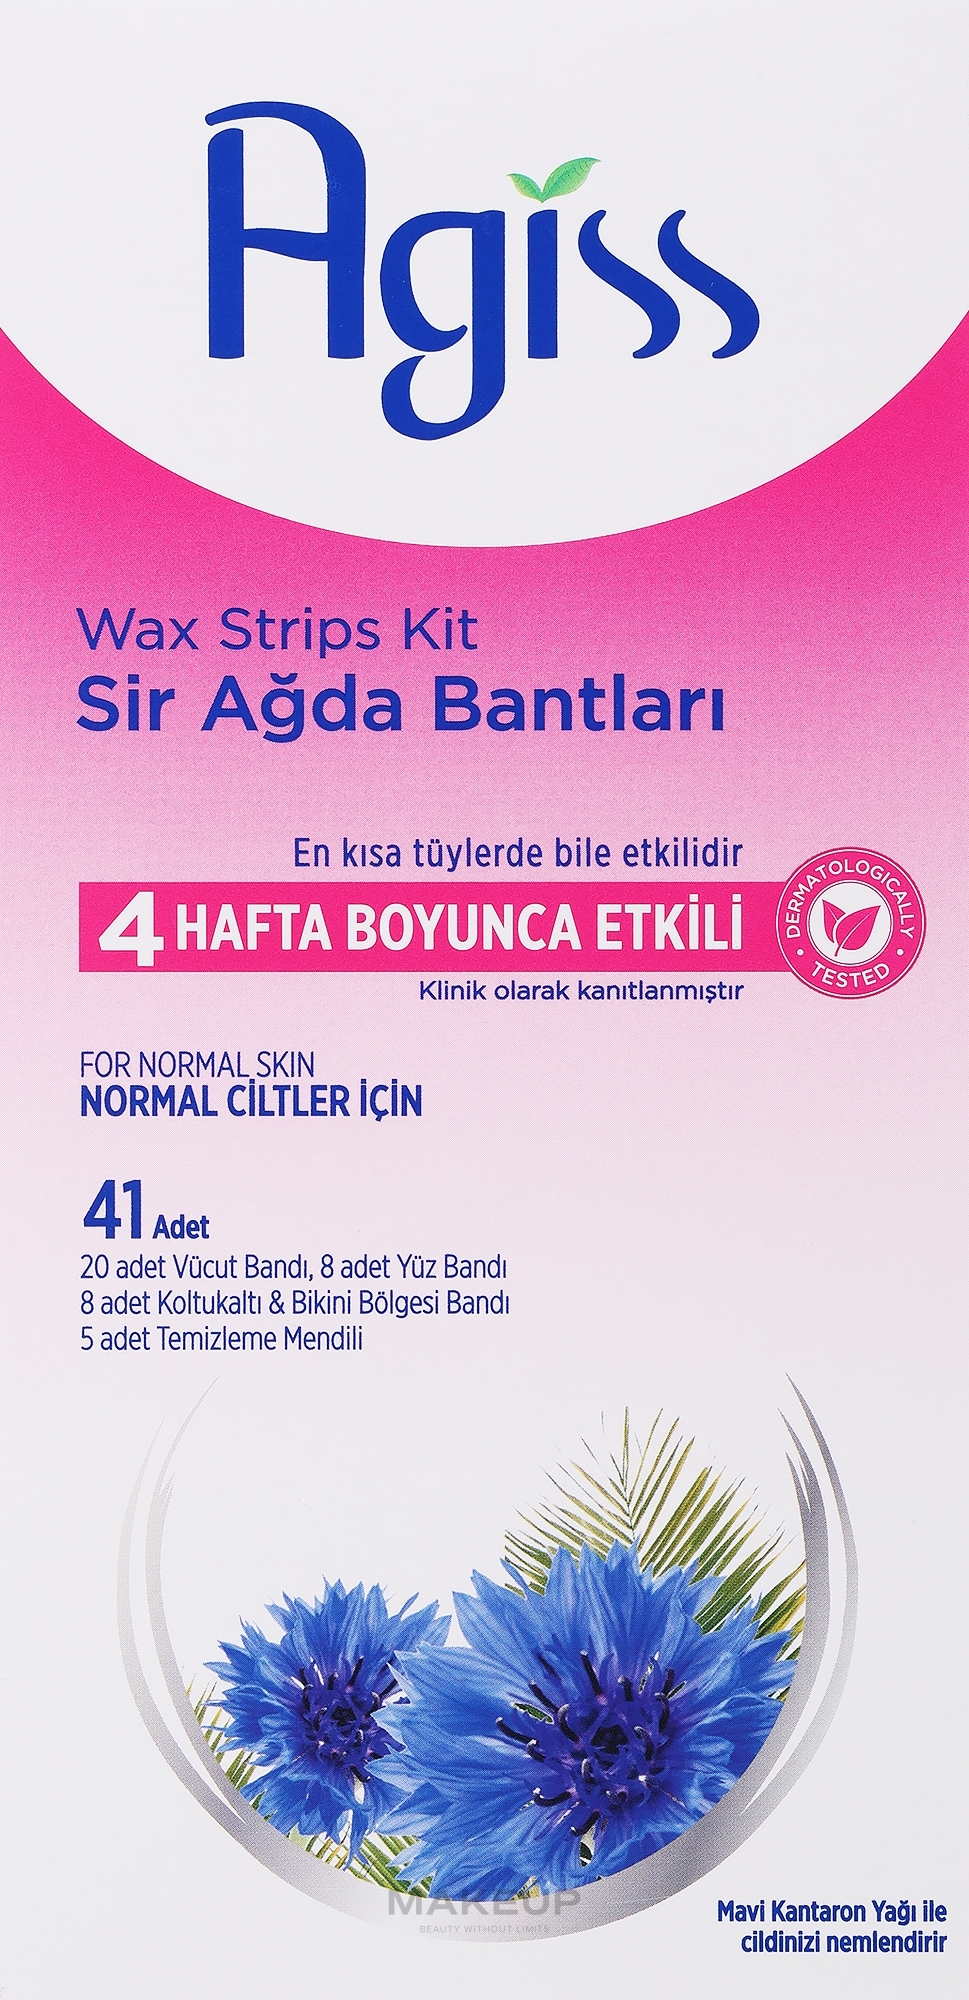 Набор восковых полосок для депиляции с ароматом вишни - Agiss Wax Strips Kit — фото 36шт